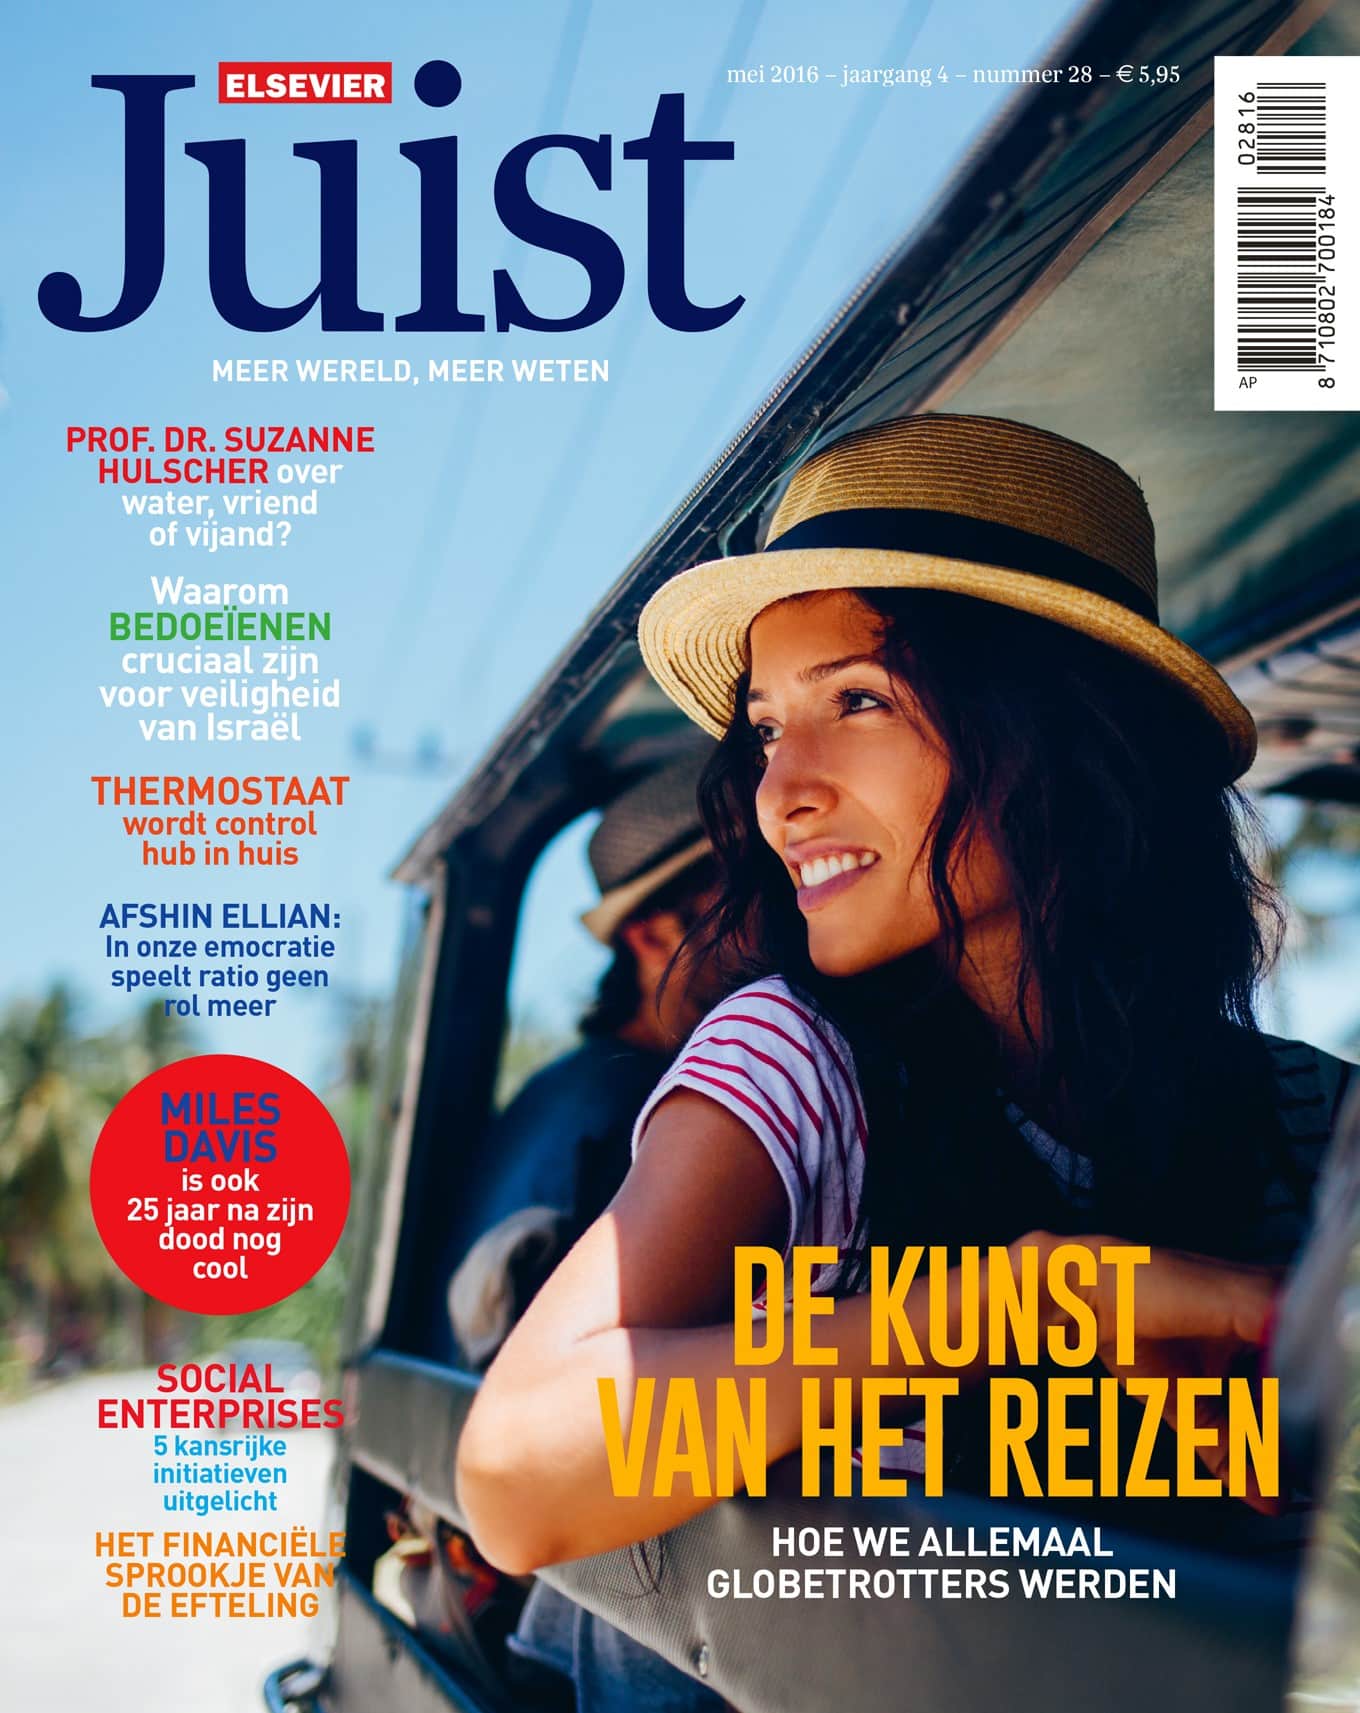 Gratis het magazine Elsevier "Juist" lezen?